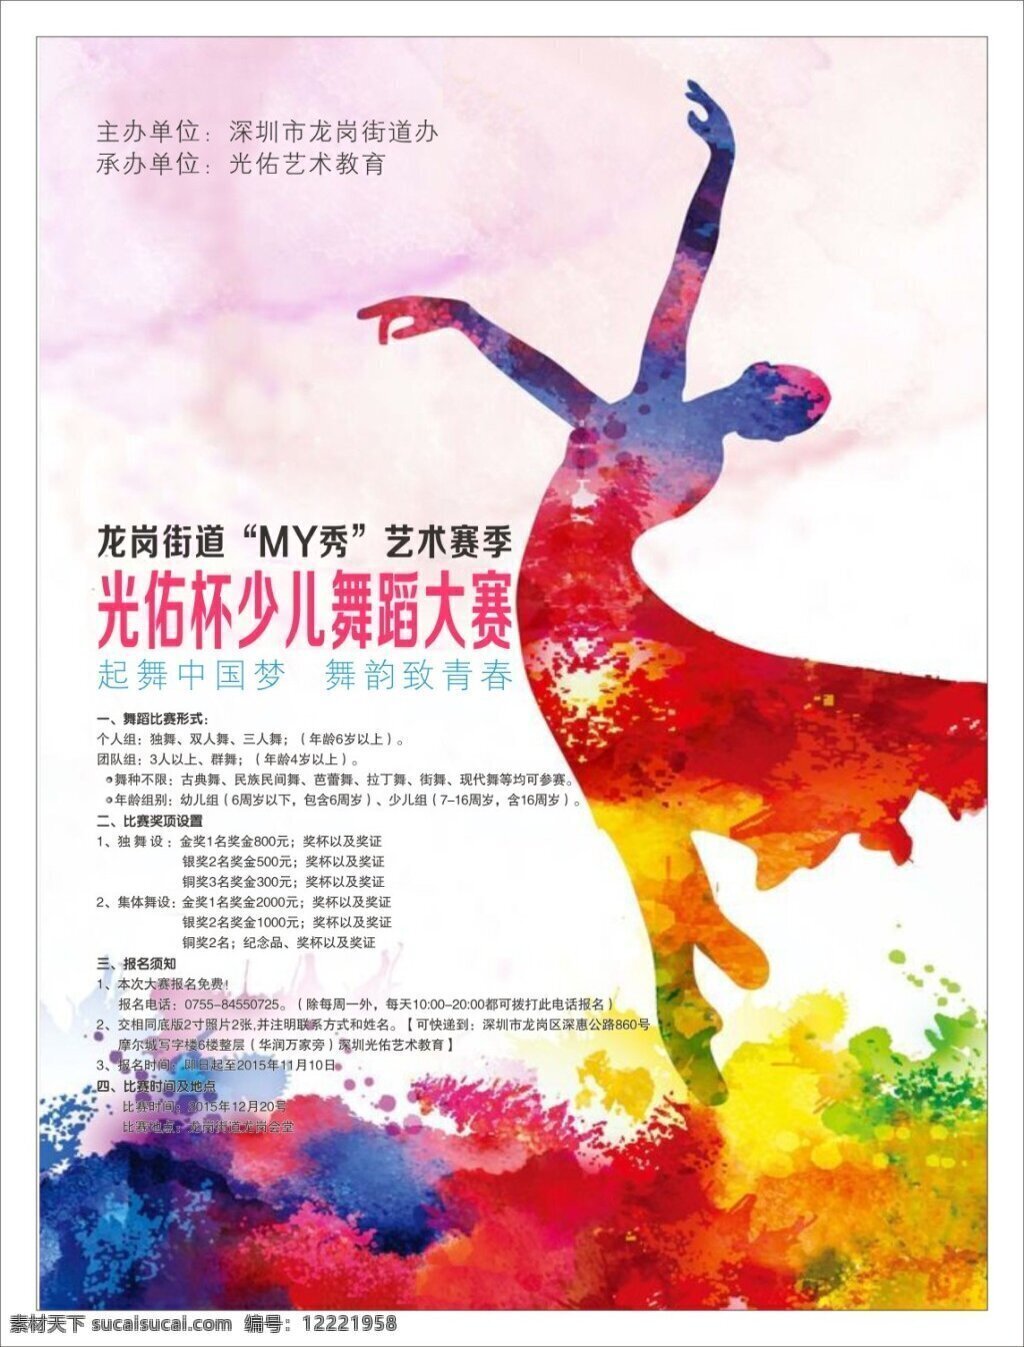 少儿 杯 舞蹈 大赛 比赛 儿童 色彩 芭蕾 民族民间舞 艺术 中国梦 致青春 现代舞 拉丁舞 迪斯科 古典舞 街舞 白色